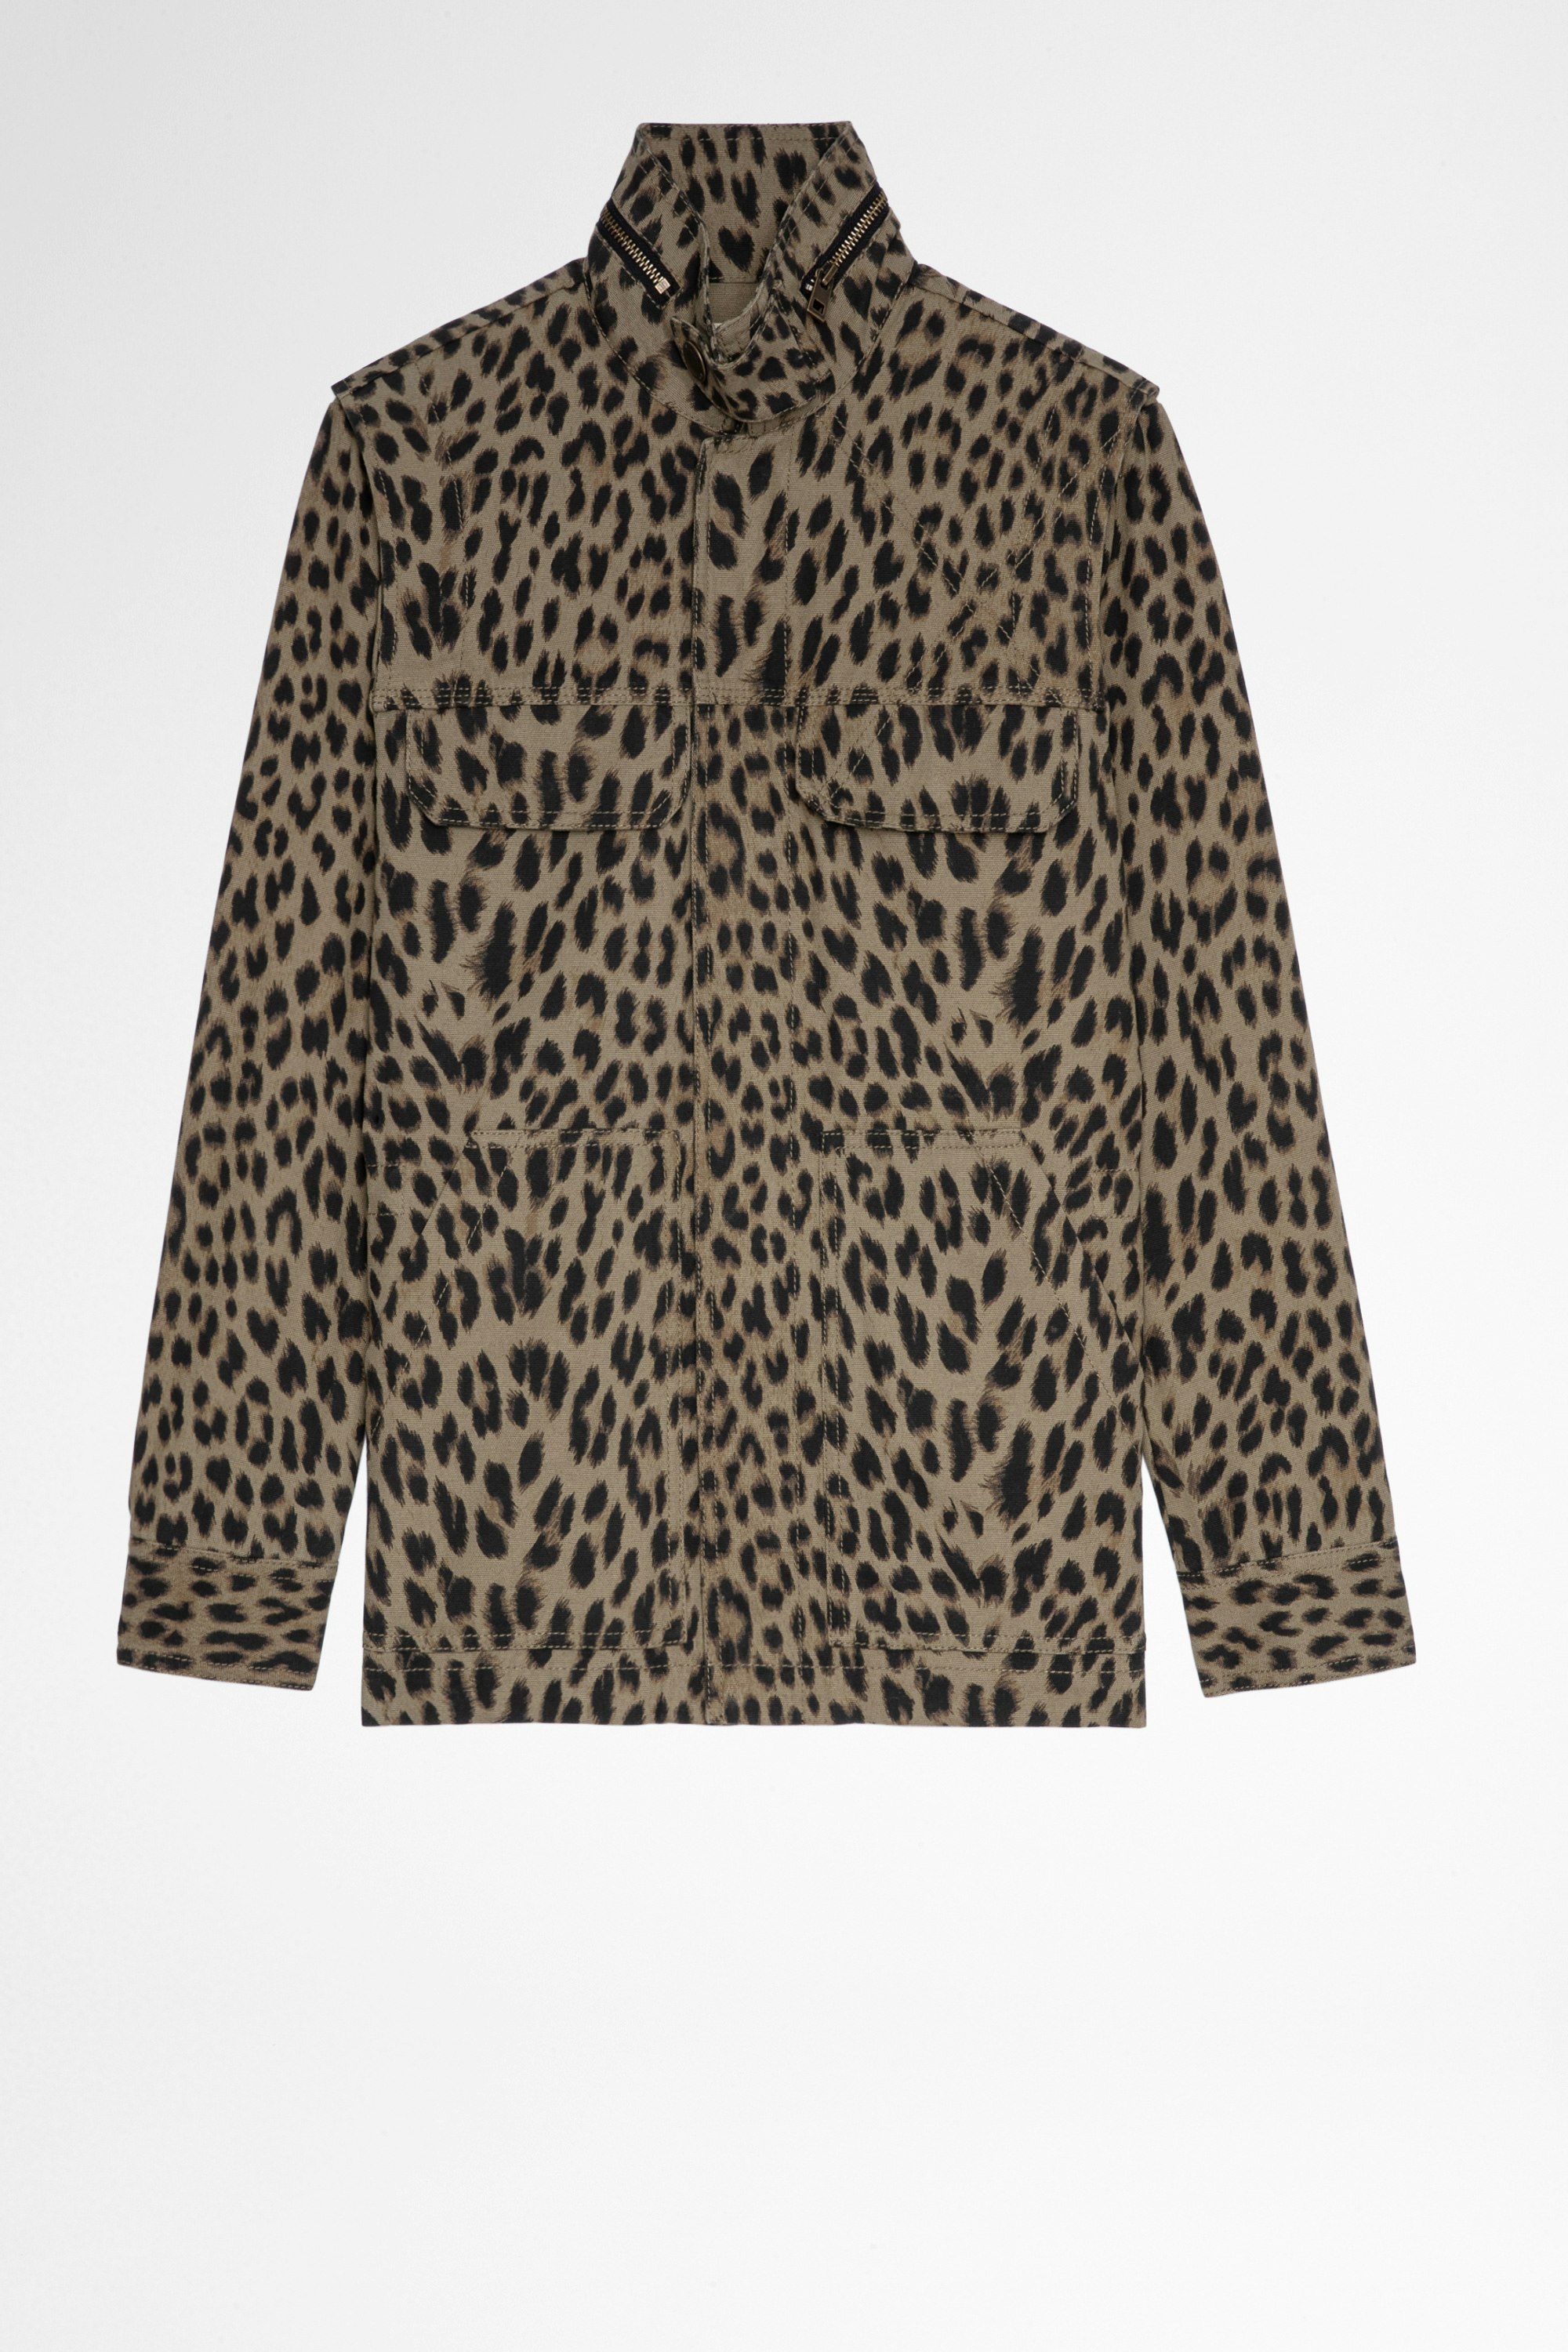 Giacca Kayaka Leopard Giacca in cotone color kaki con stampa leopardata, donna. Reallizzato con fibre da agricoltura biologica